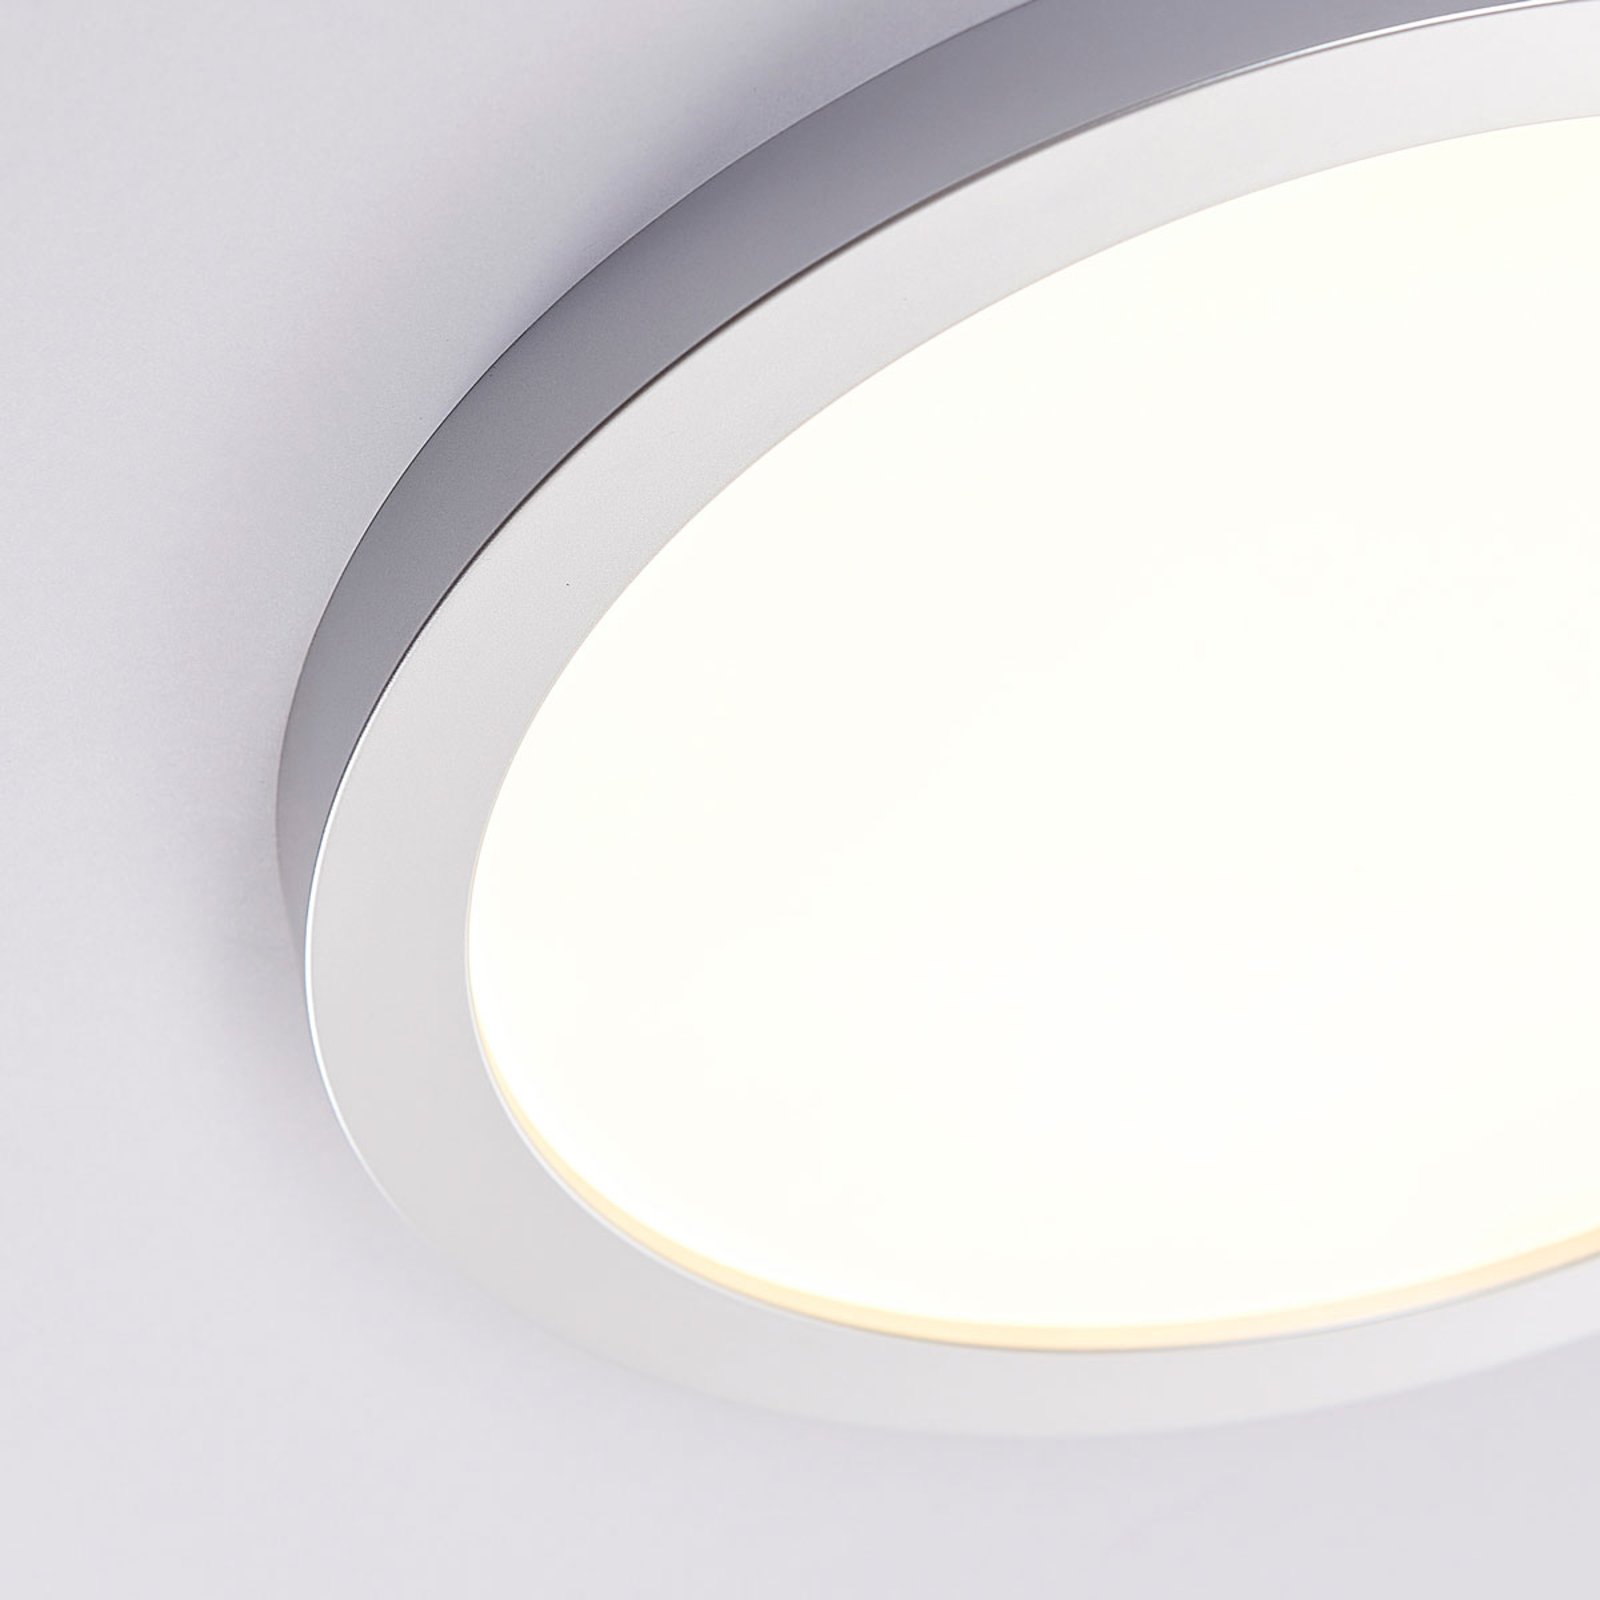 Stropní svítidlo Solvie LED, stříbrné, kulaté, Ø 30 cm